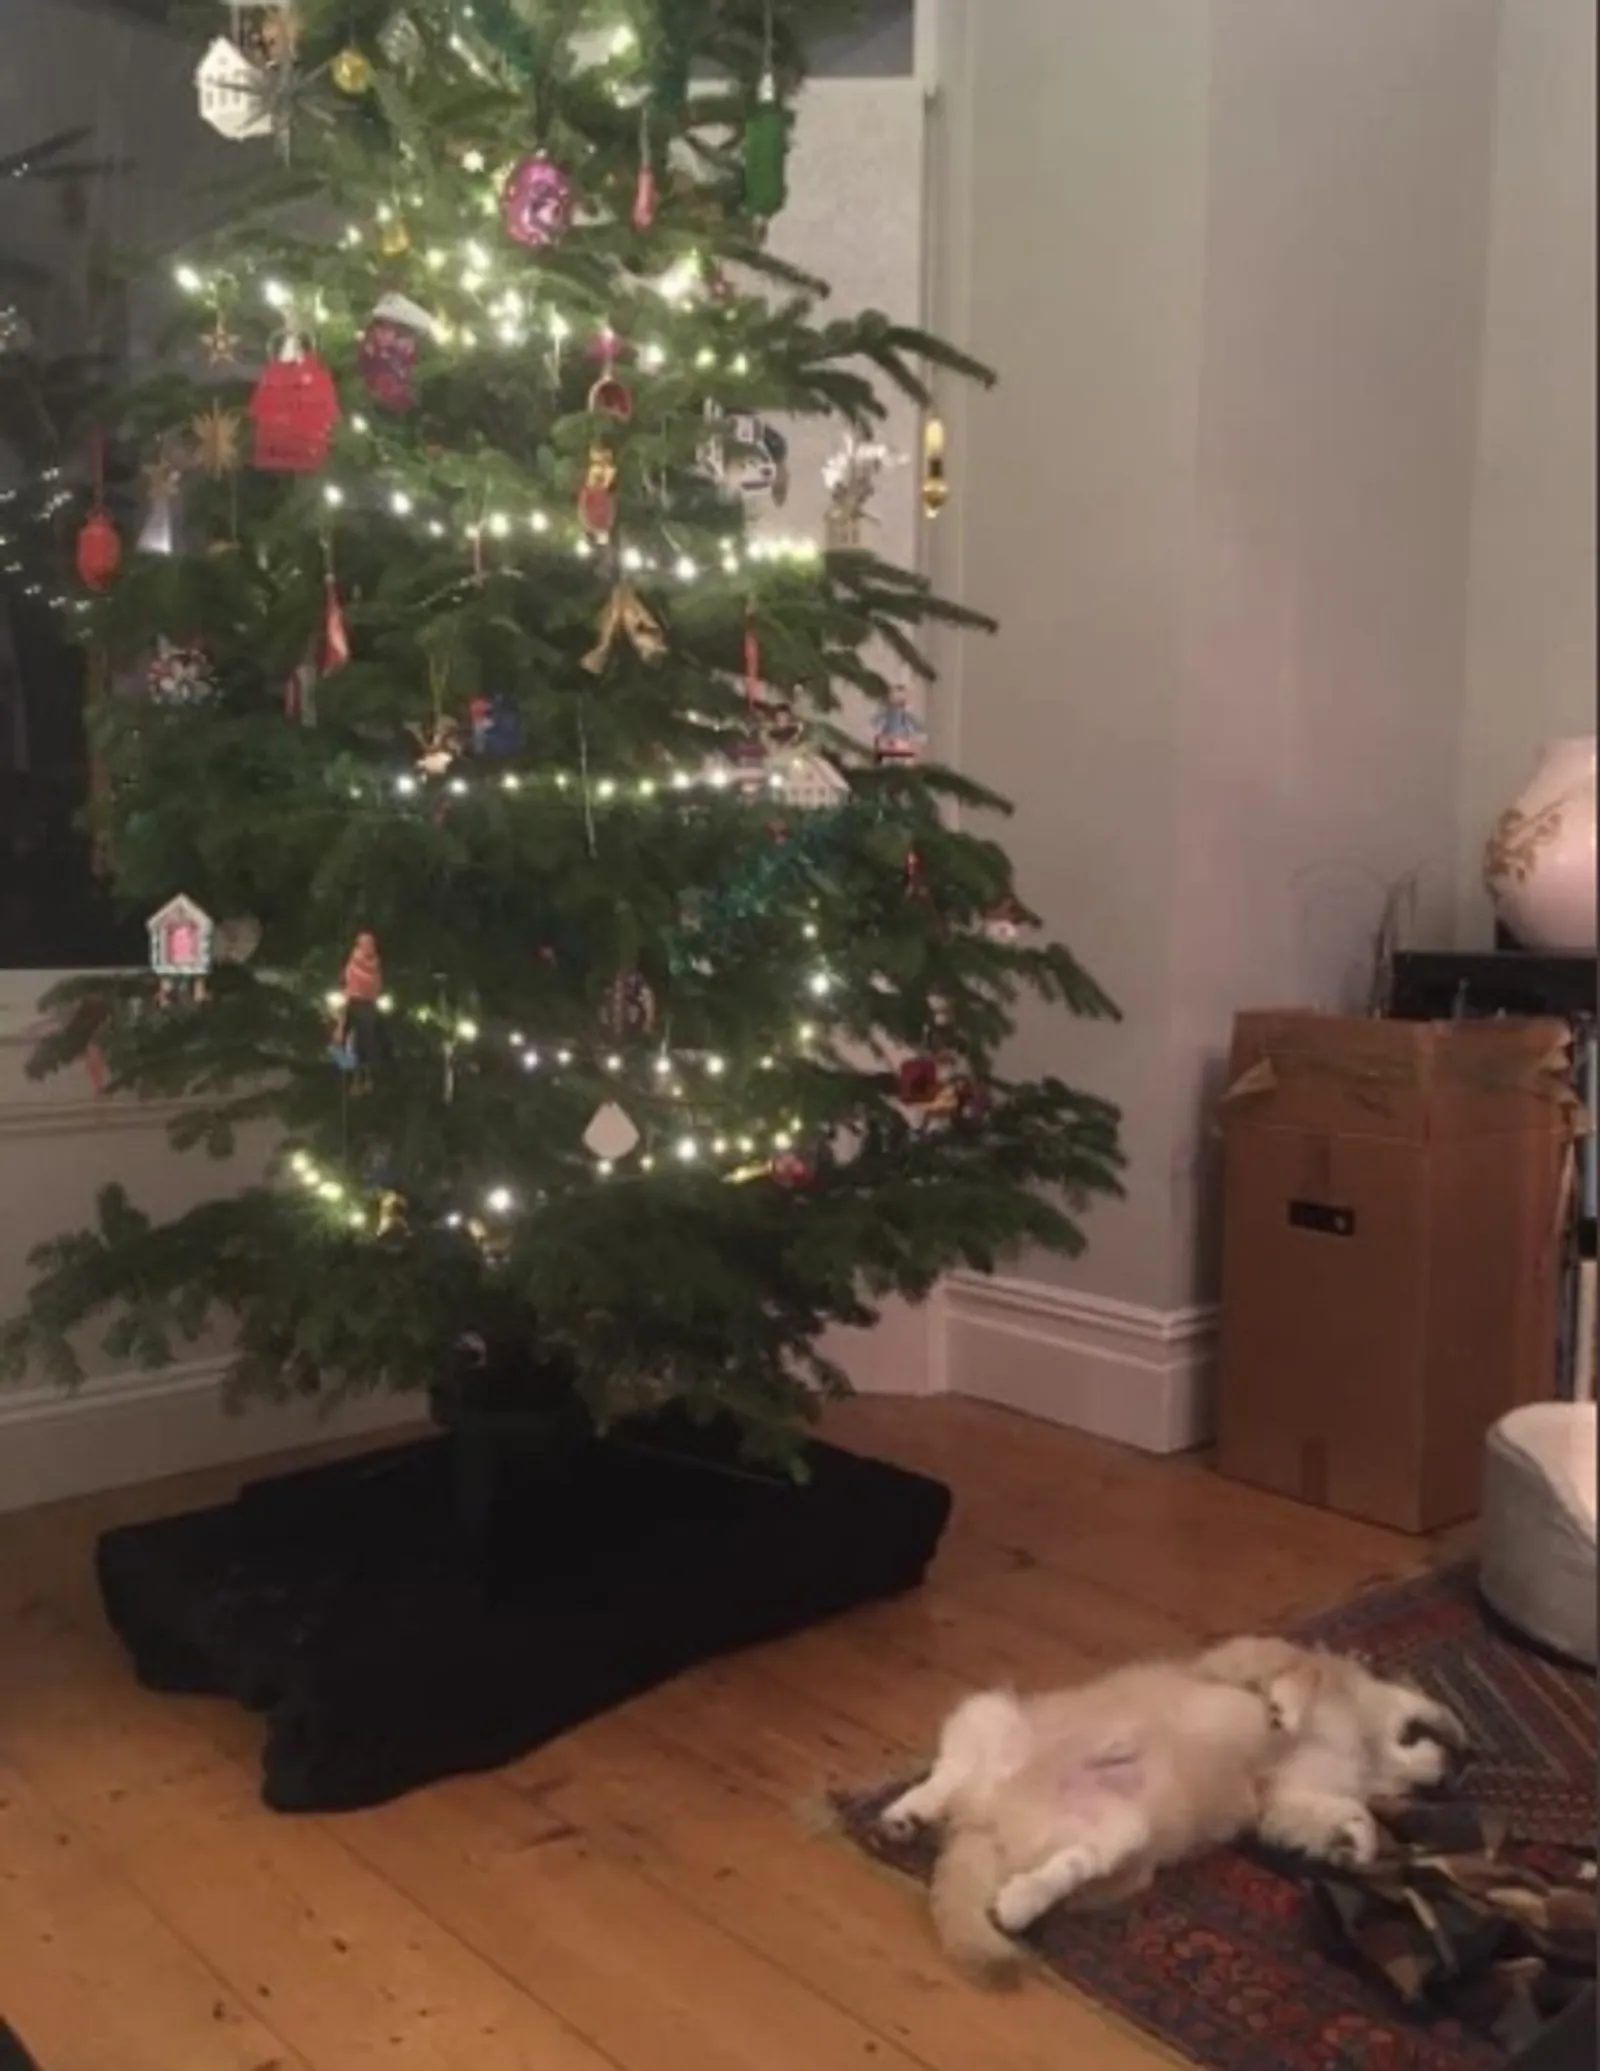 15 Kelakuan Kucing Merusak Pohon Natal ini Bikin Marah Sekaligus Gemes